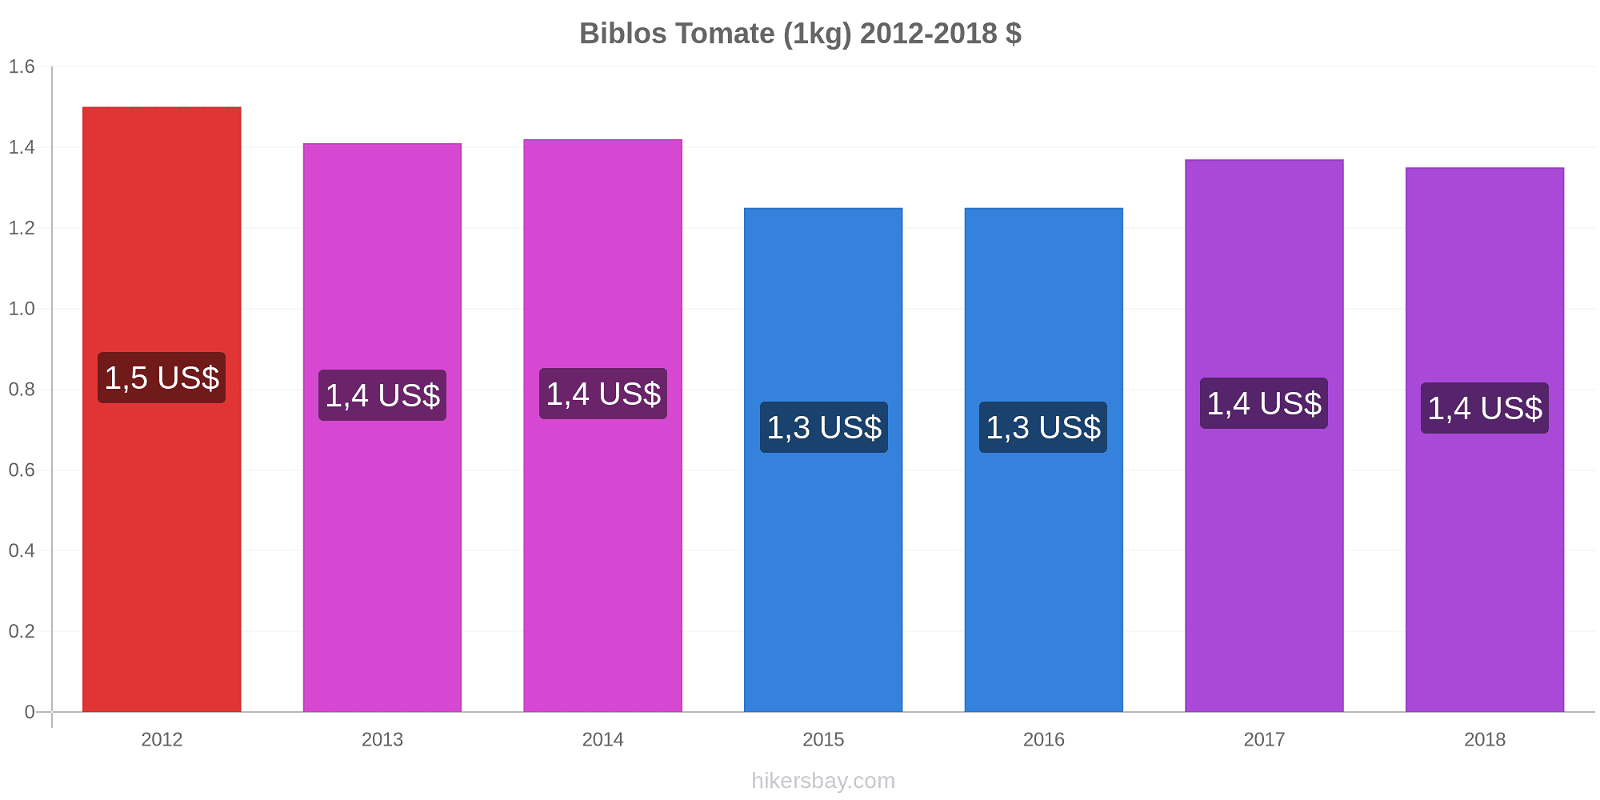 Biblos cambios de precios Tomate (1kg) hikersbay.com